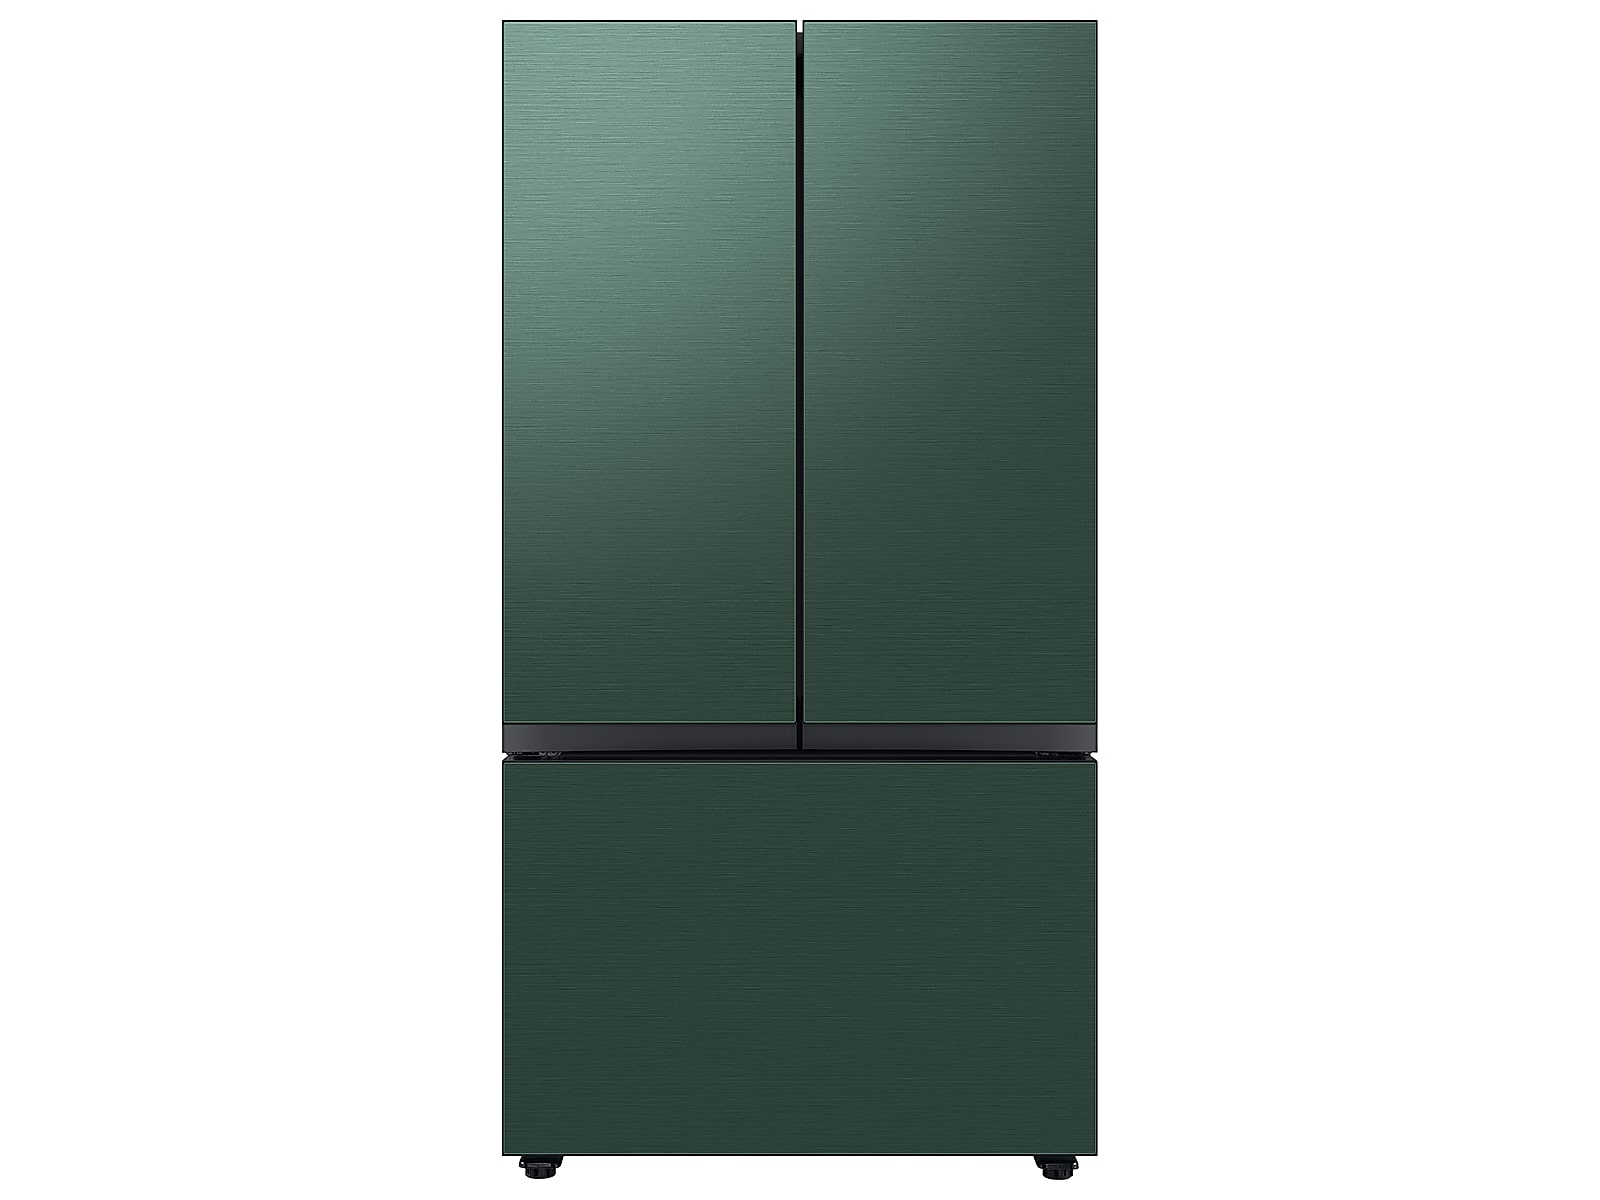 Samsung Bespoke 3-Door French Door Refrigerator (24 cu. ft.) with Beverage Center™ in Emerald in Green Steel(BNDL-1650311698378)